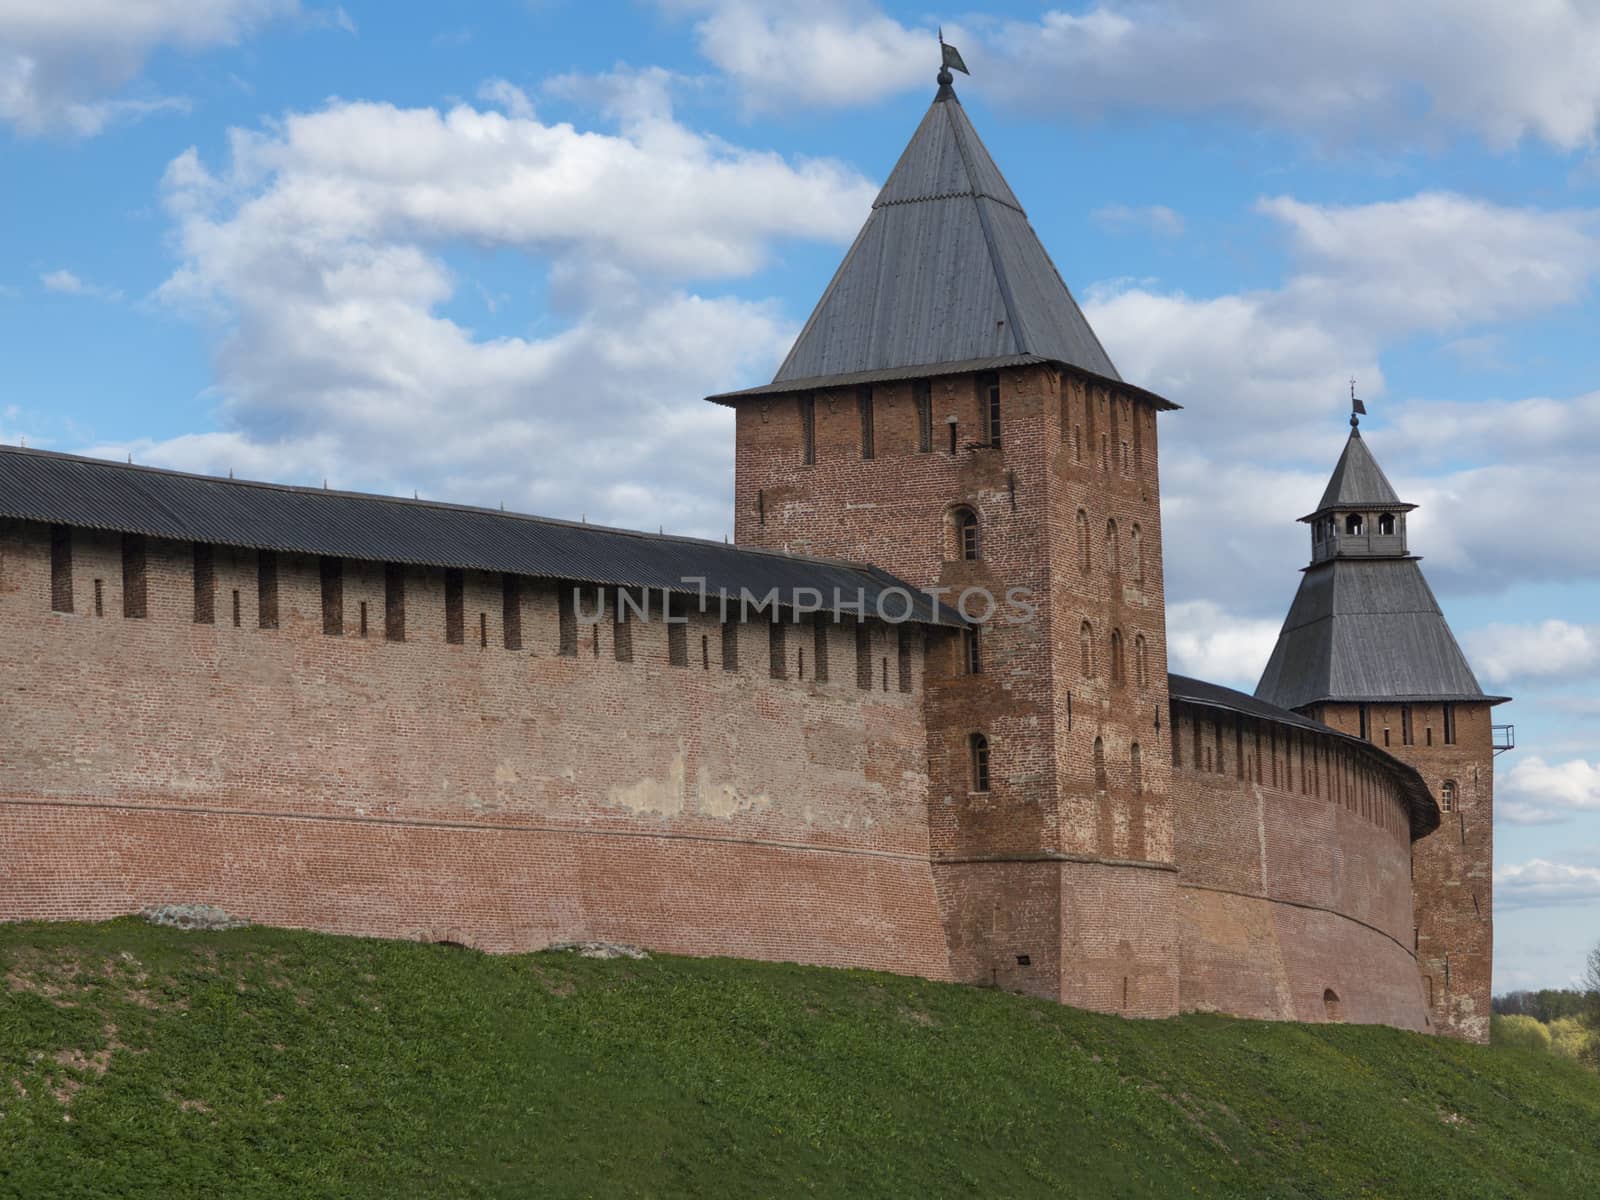 Towers of Novgorod Kremlin by snafu